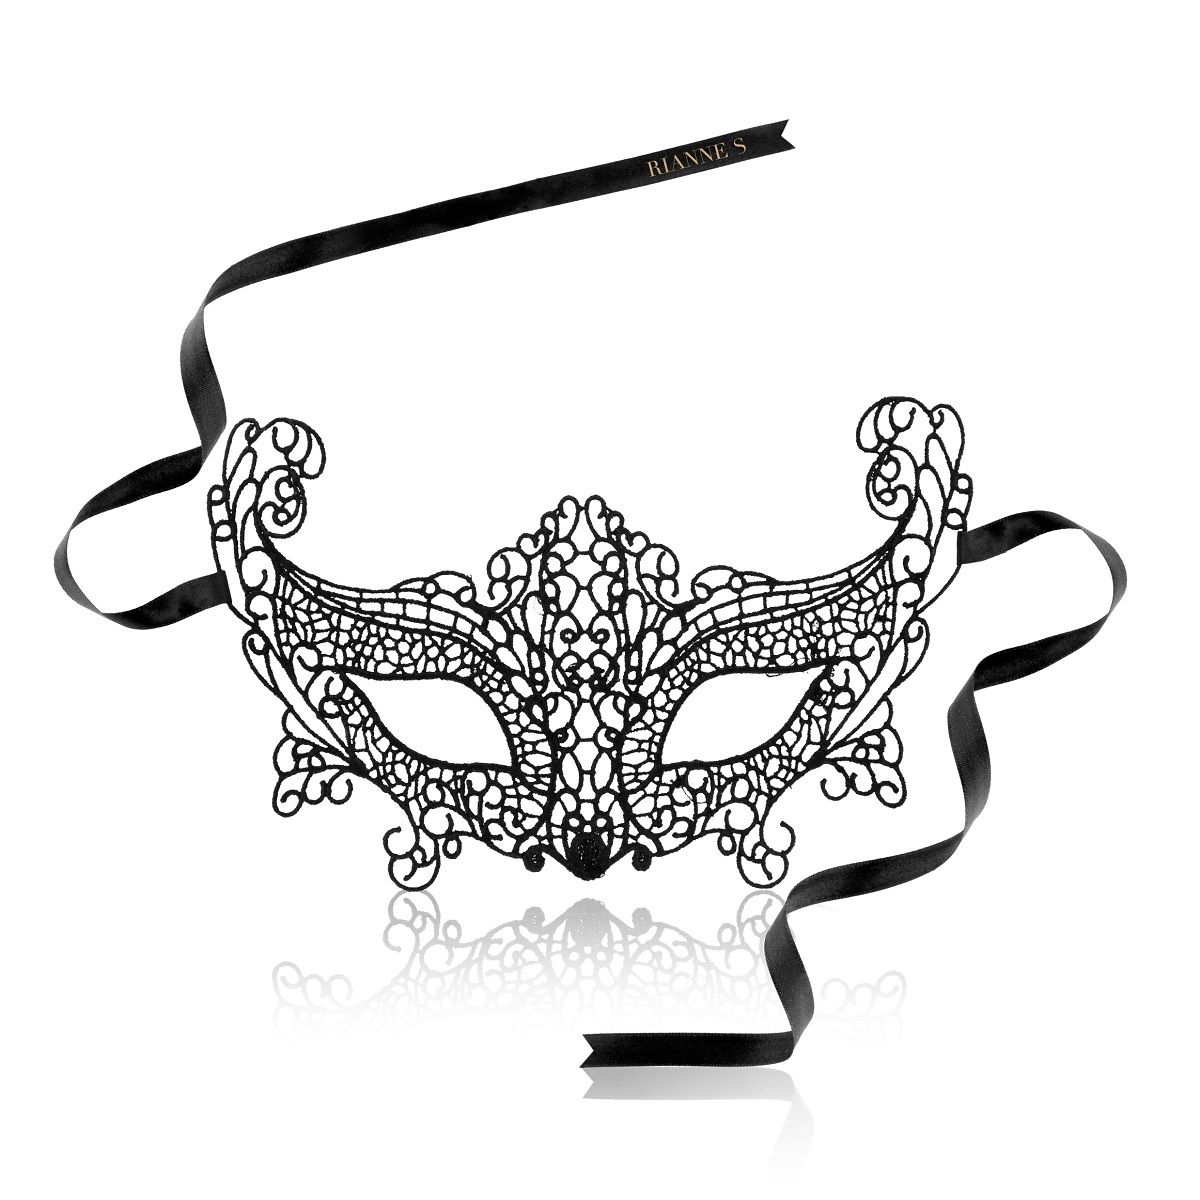 Замечательная маска в венецианском стиле создана для классных женщин. Она сделана из мягкого материала, поэтому идеально сочетается с контурами лица и идеально подходит милым дамам. Стильная, сексуальная и изящная, она создана для особых случаев.